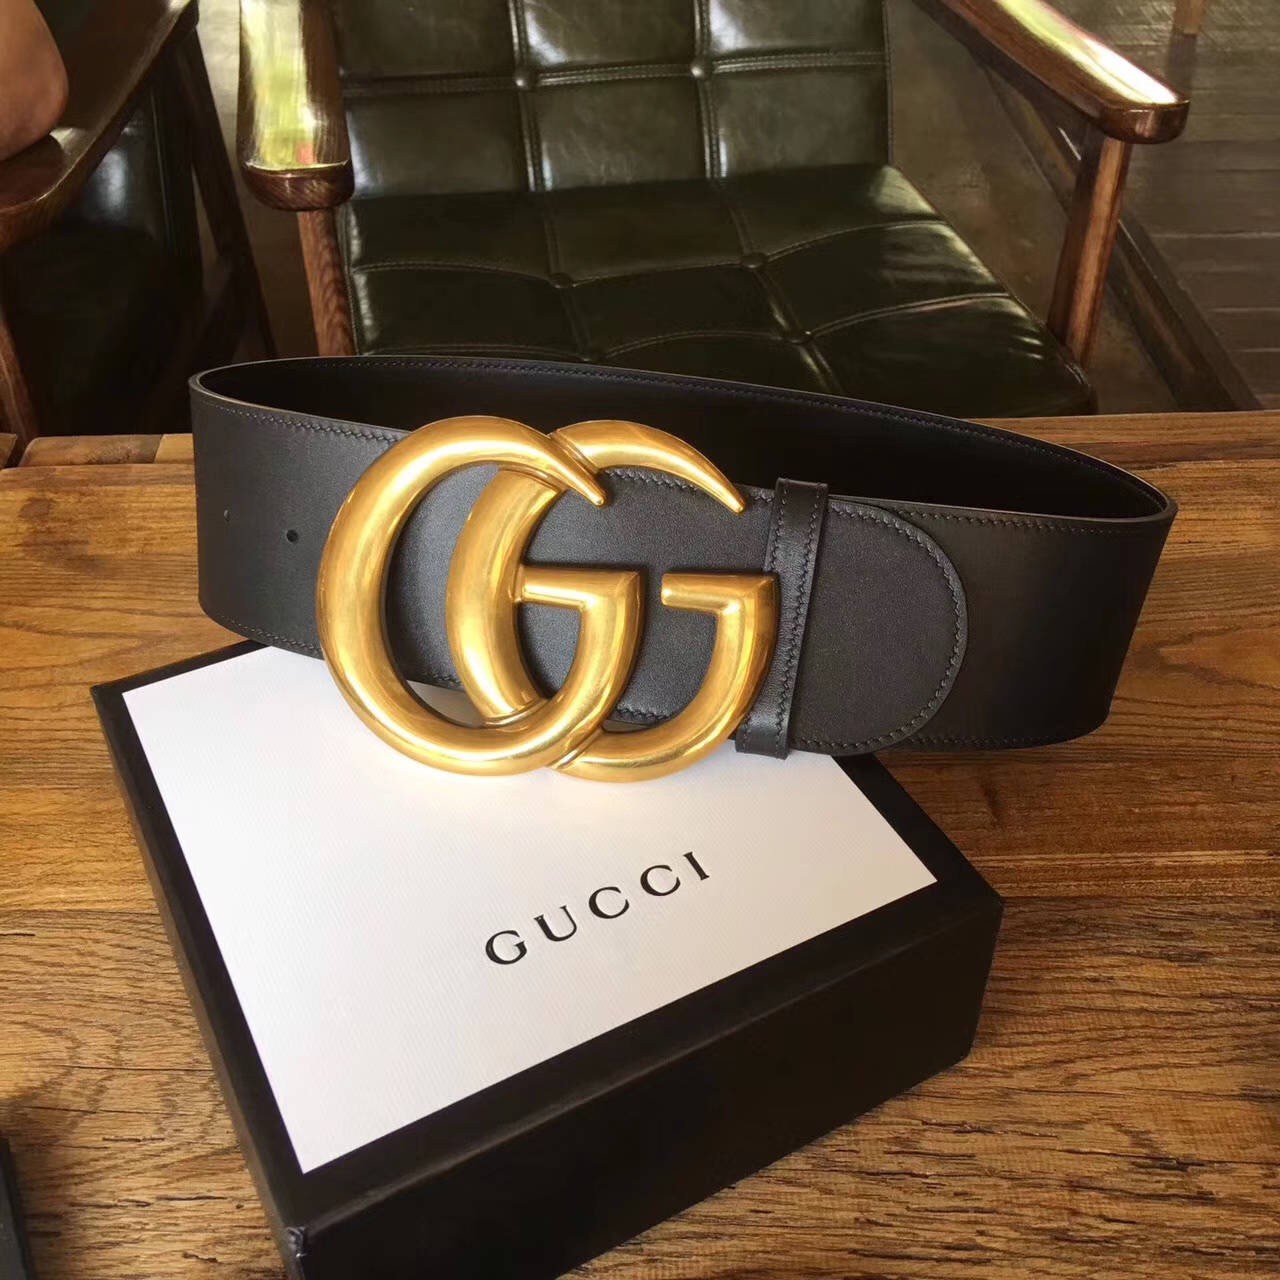 Fake 1:1 Gucci Belt GC01791